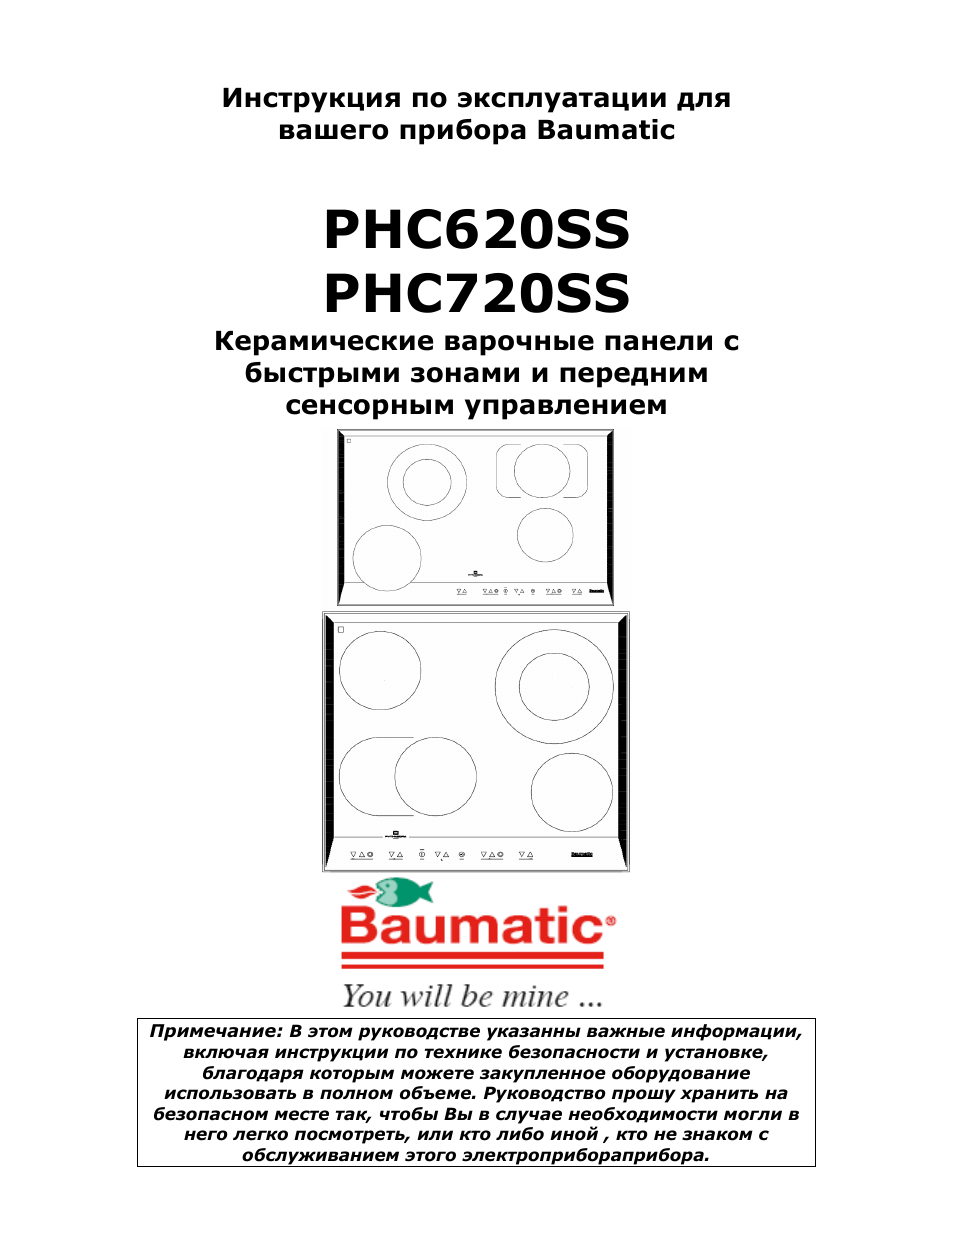 Инструкция по эксплуатации Baumatic PHC720SS | 33 страницы